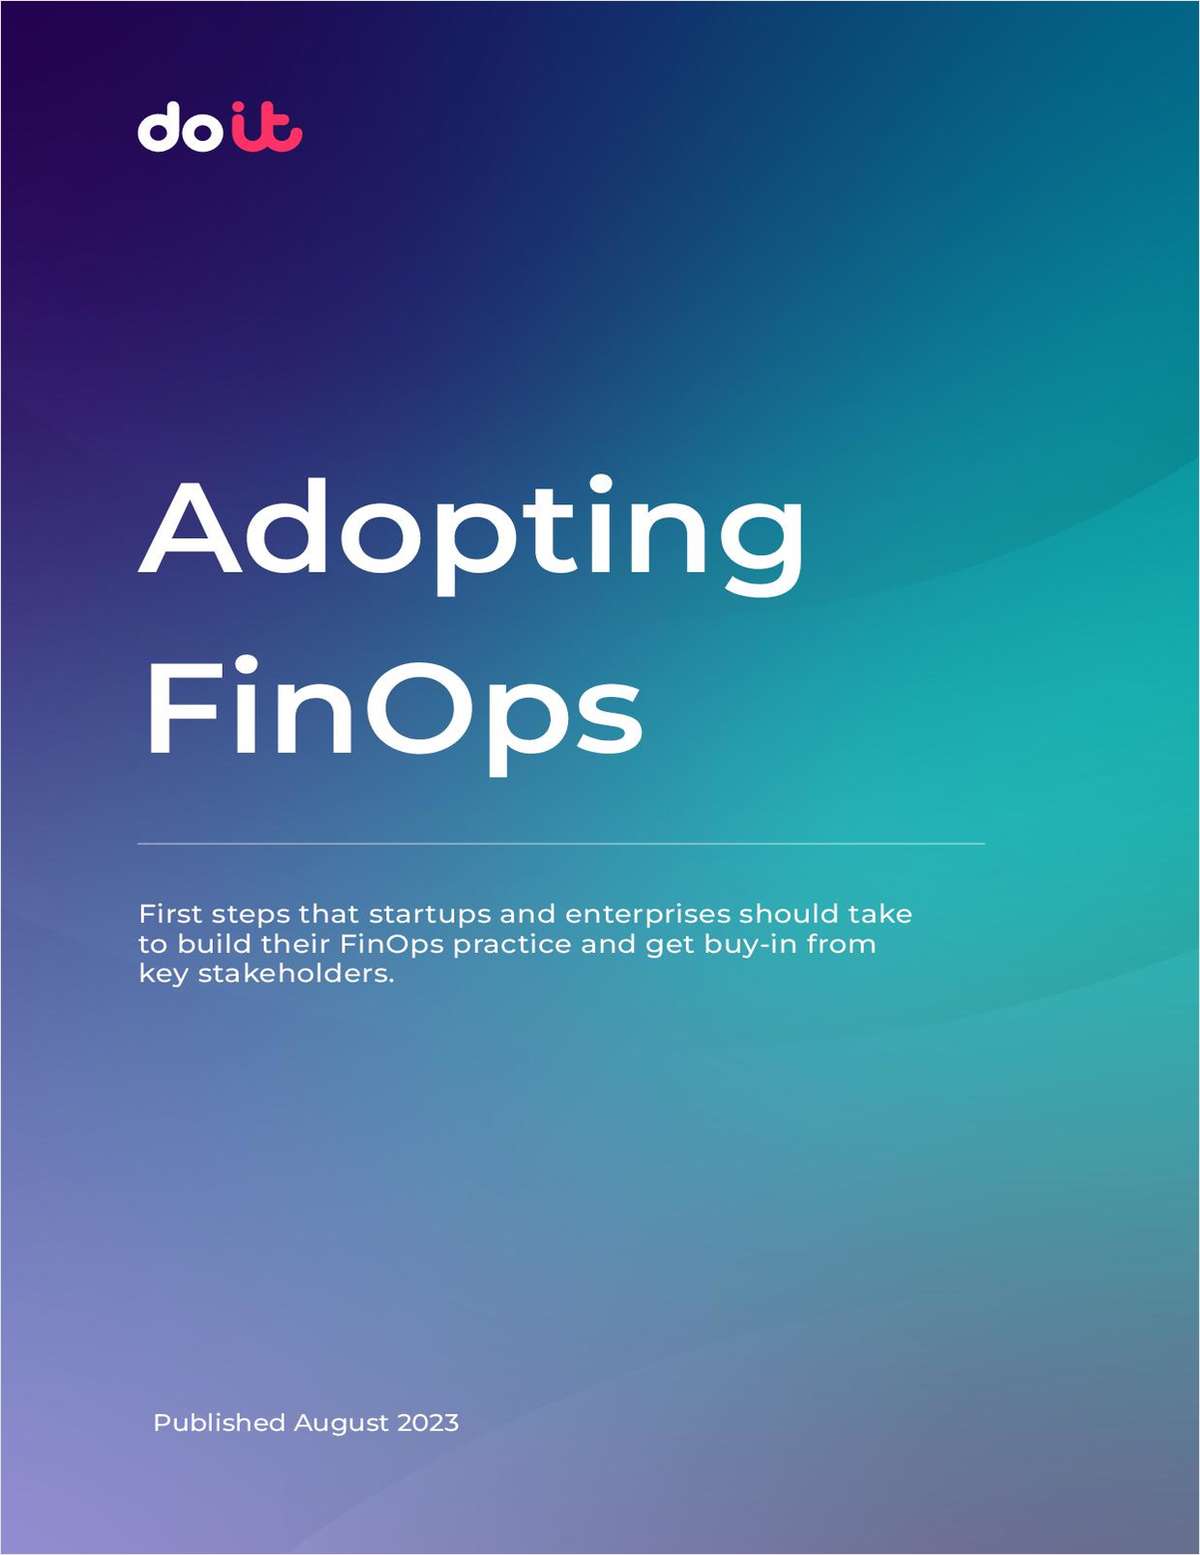 Adopting FinOps eBook